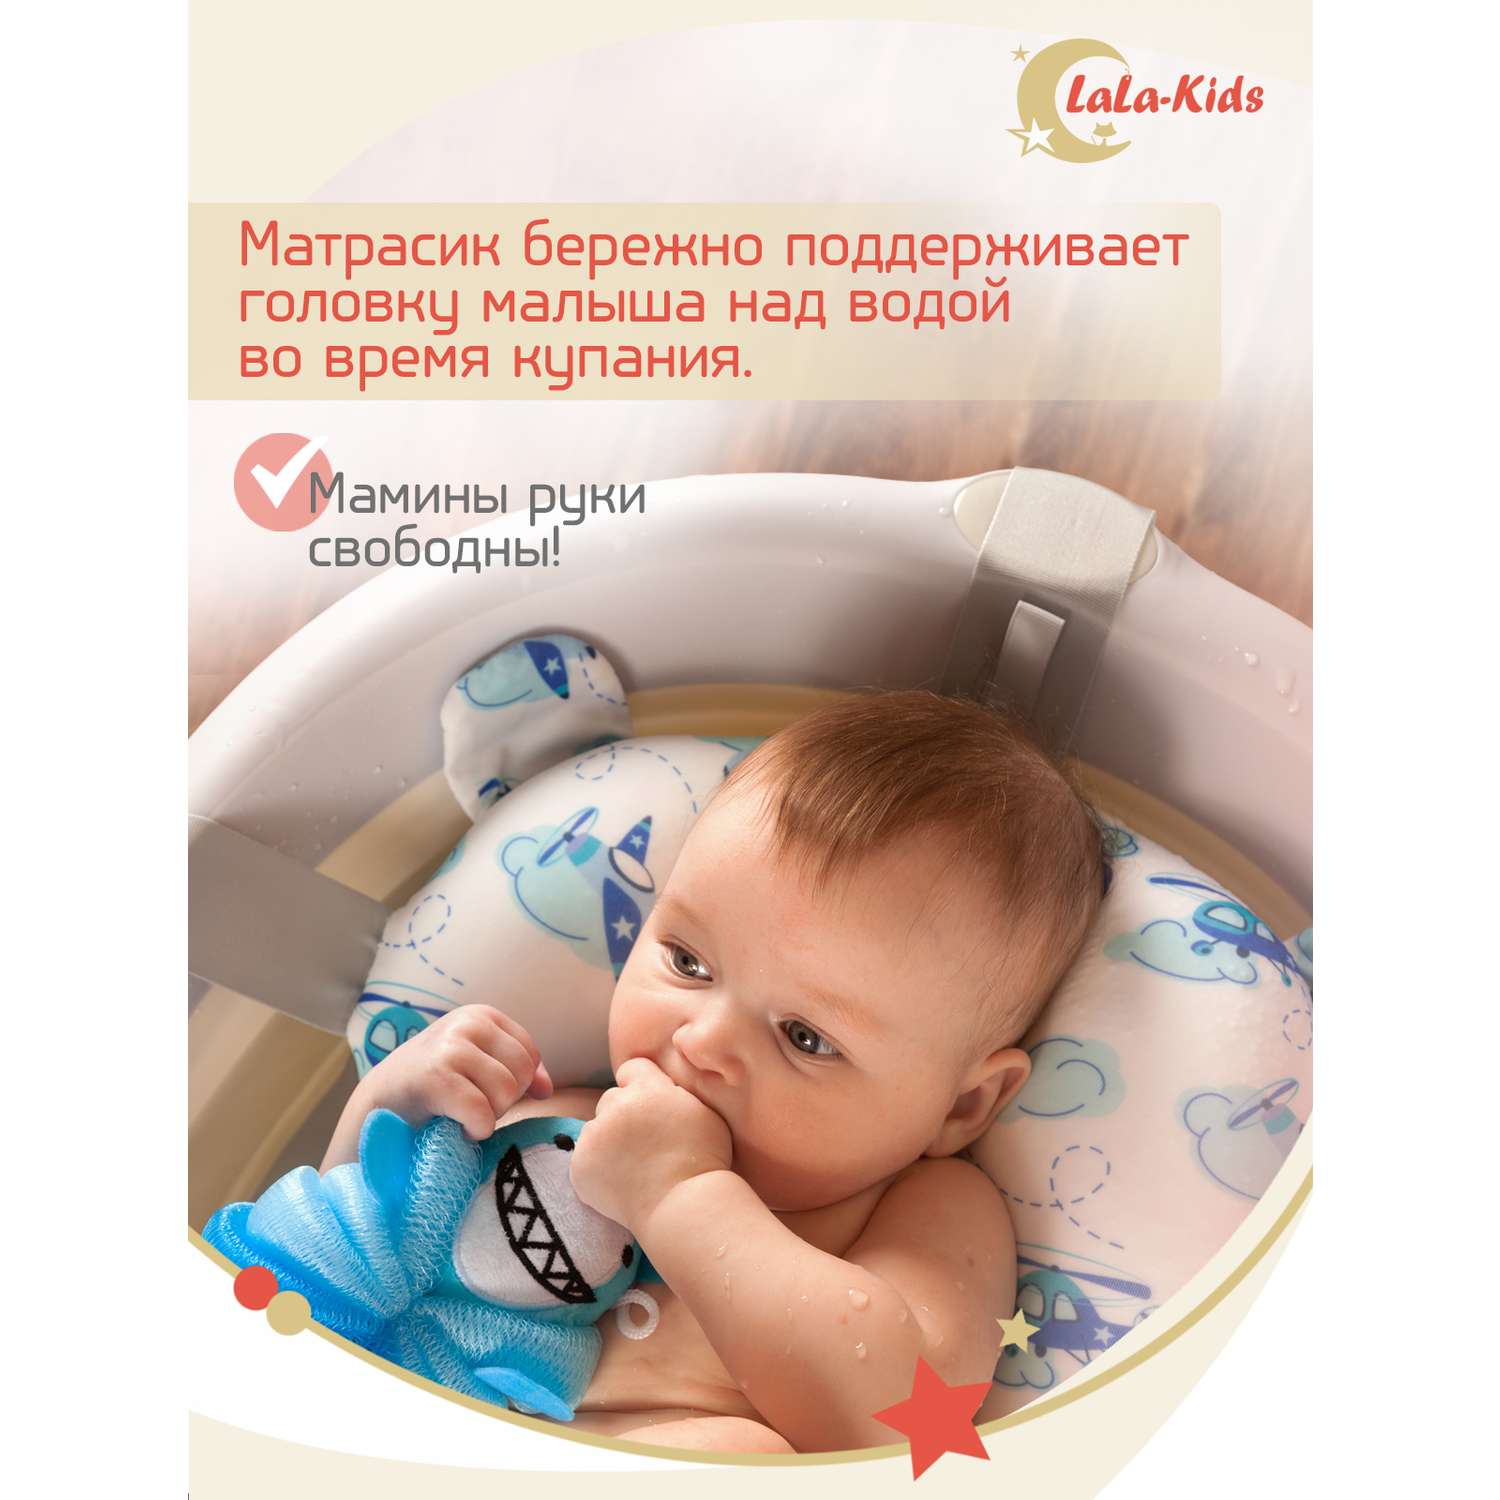 Складная ванночка LaLa-Kids для купания новорожденных с матрасиком в комплекте - фото 10